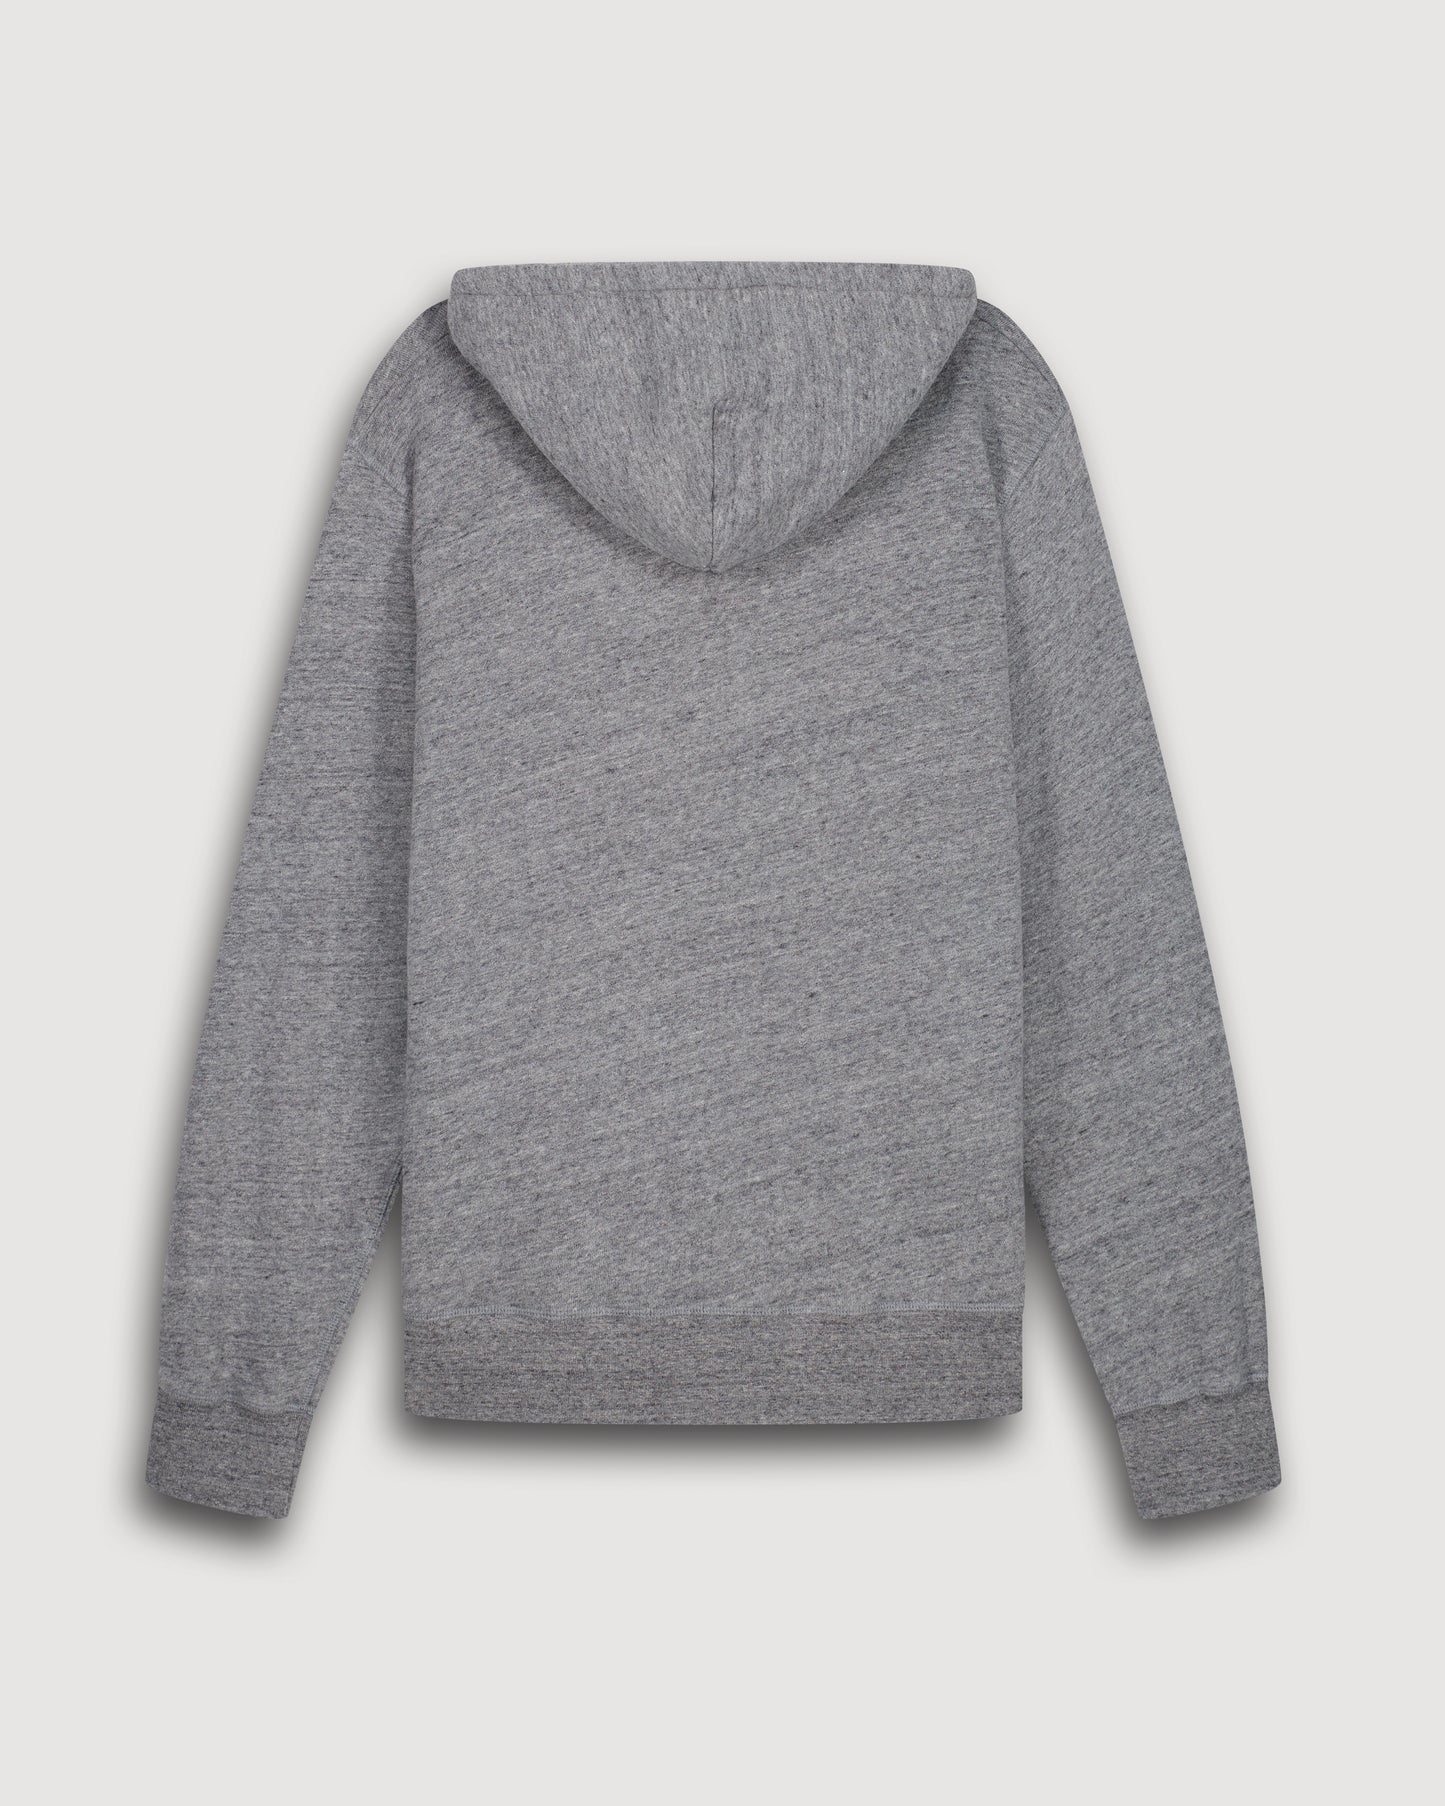 Sweatshirt à capuche Homme en coton Gris Chiné & Marine BC75304-08